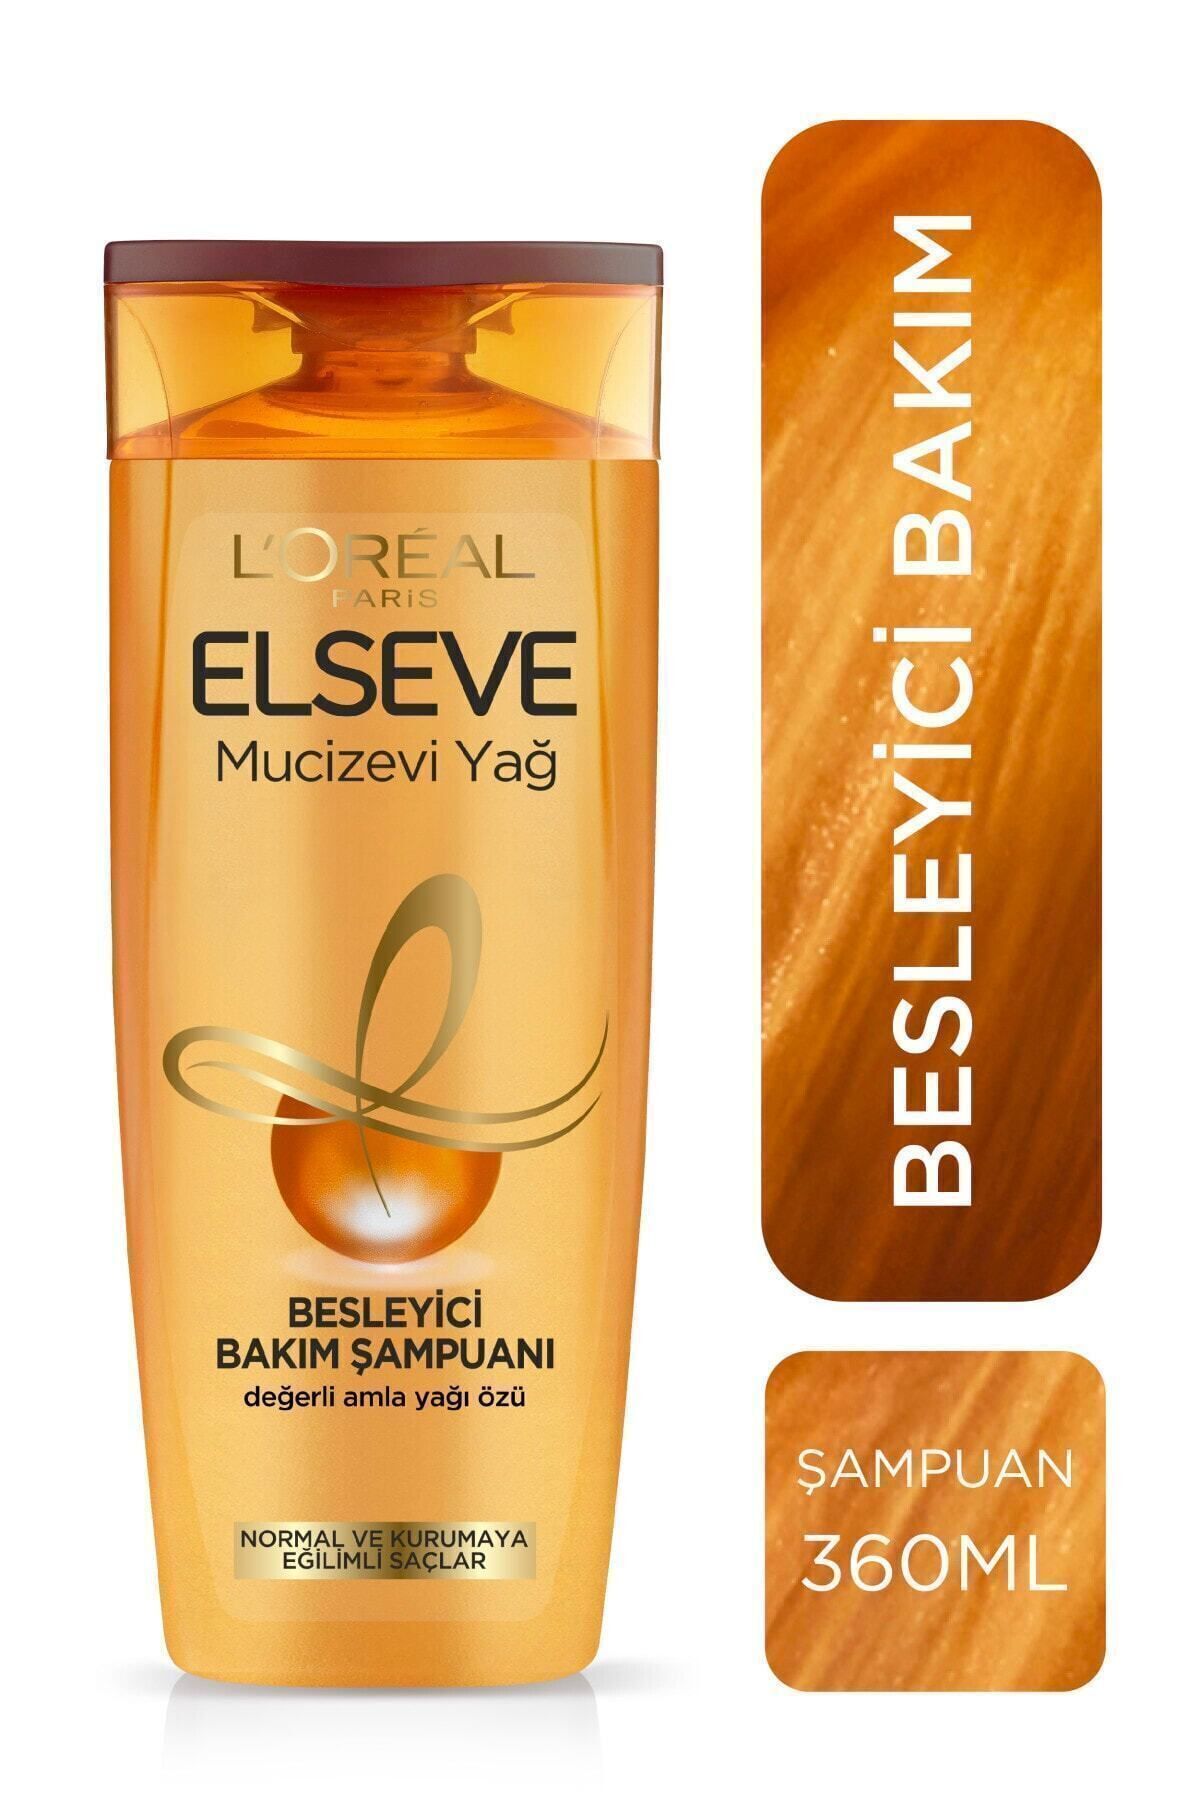 Elseve L'oréal Paris Mucizevi Yağ Besleyici Bakım Şampuanı 360 ml